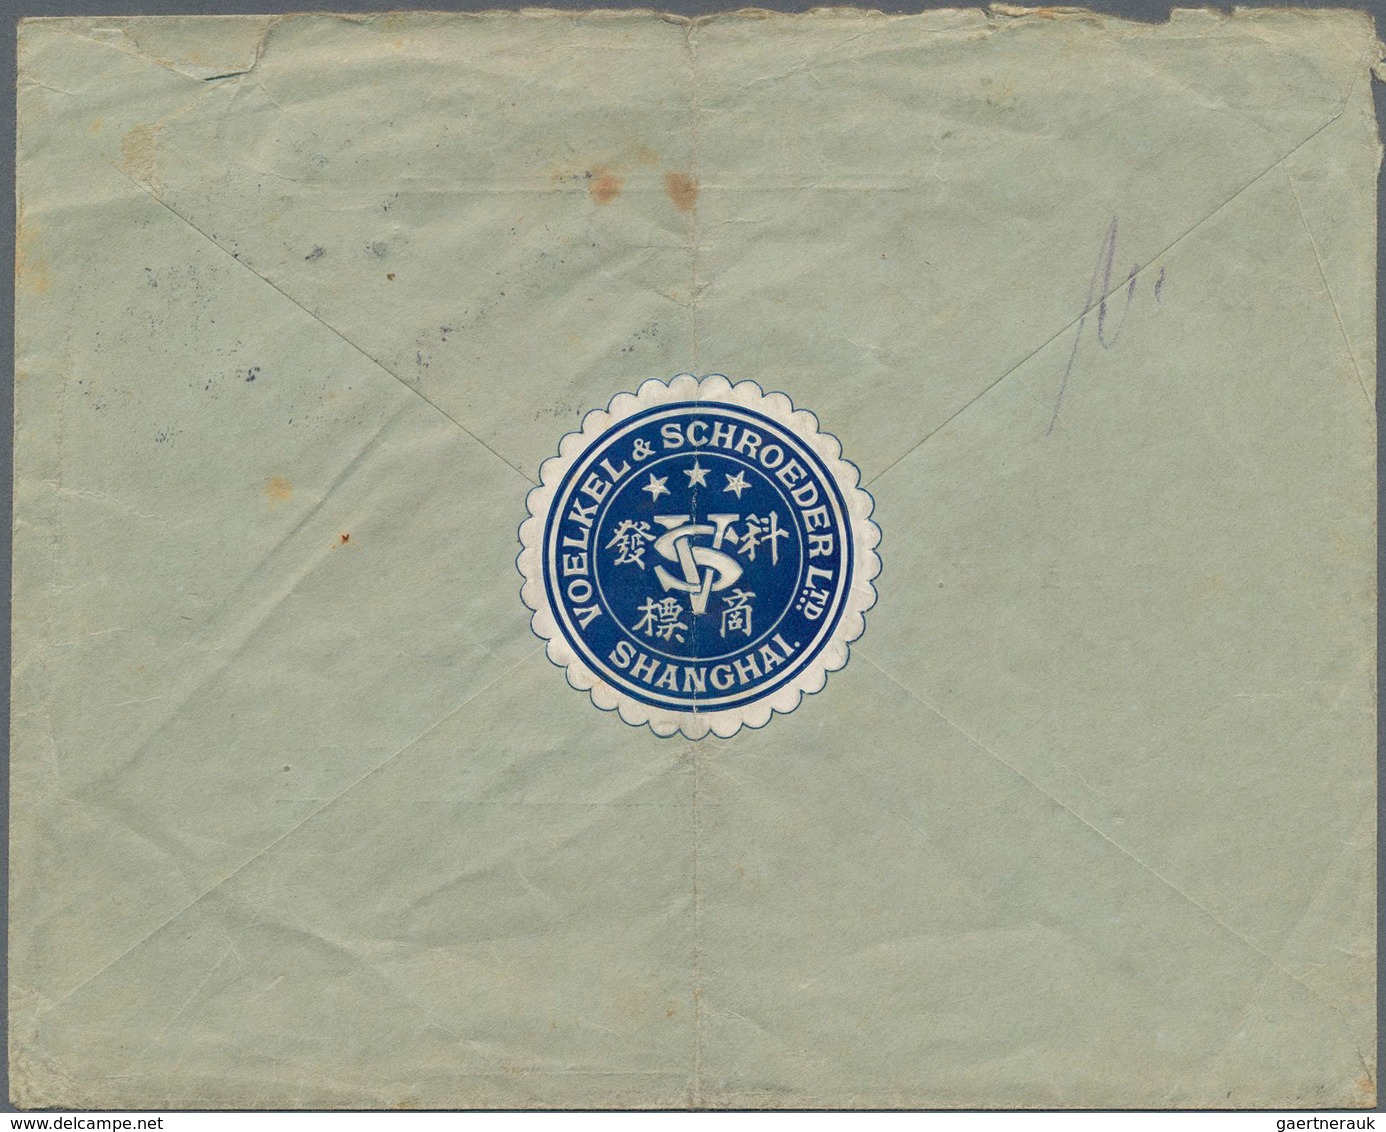 Deutsche Post in China: 1891/1912, kleine Partie von acht Bedarfs-Belegen "Dt. Post in China", dabei